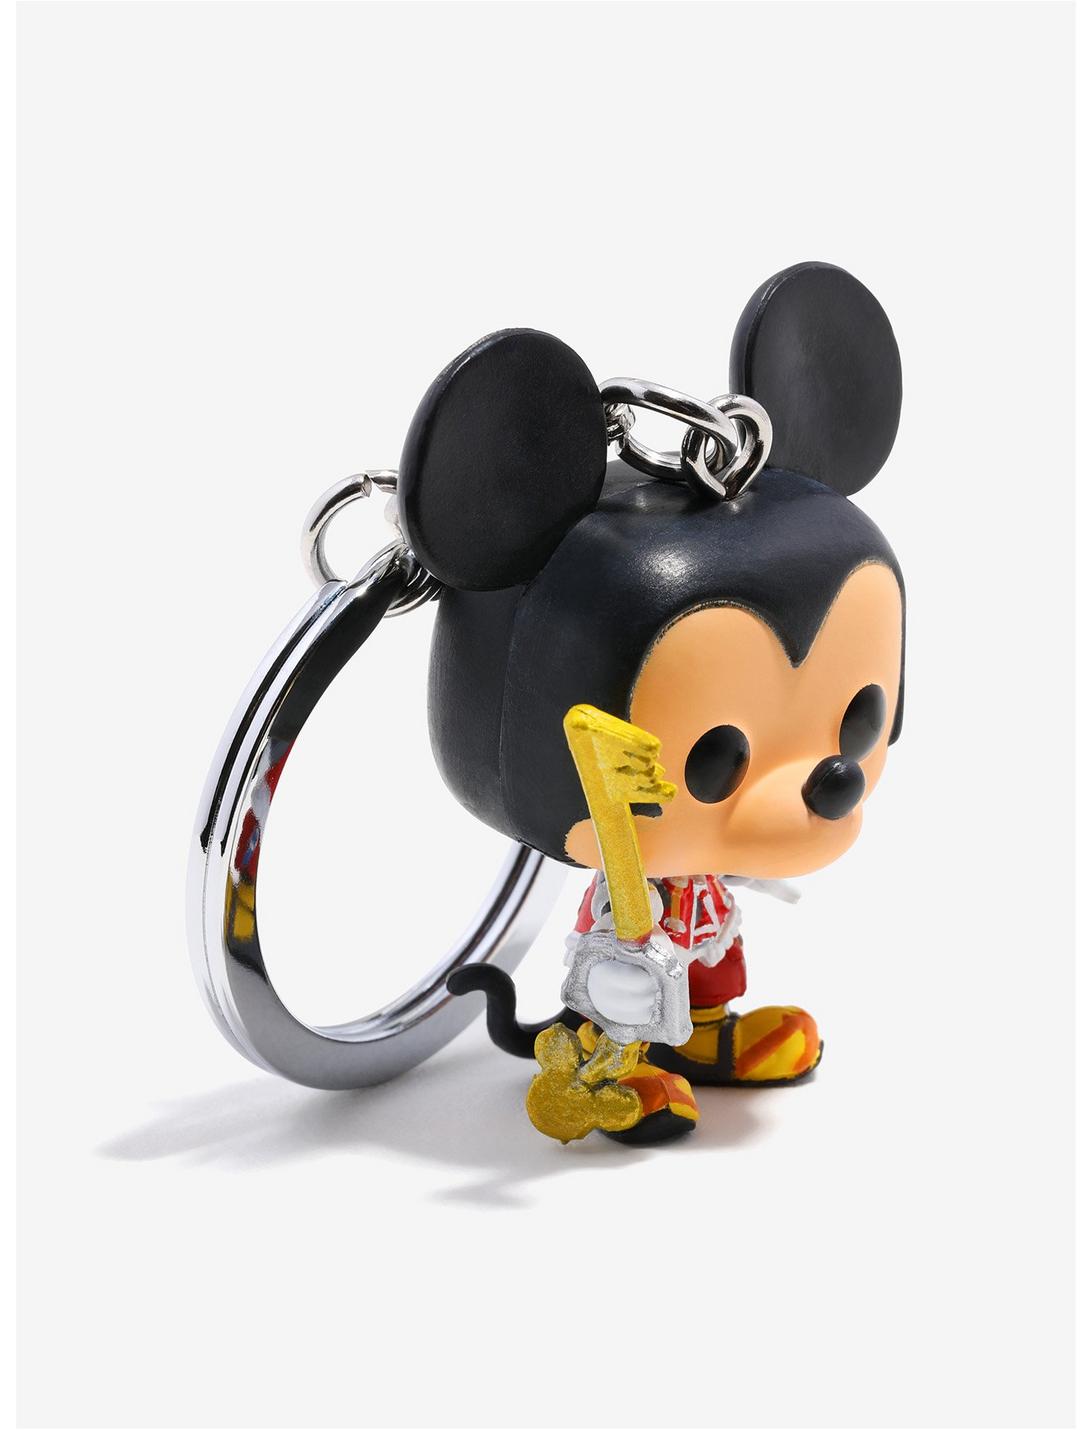 Funko Pocket Pop! Disney Kingdom Hearts Mickey Key Chain, , hi-res